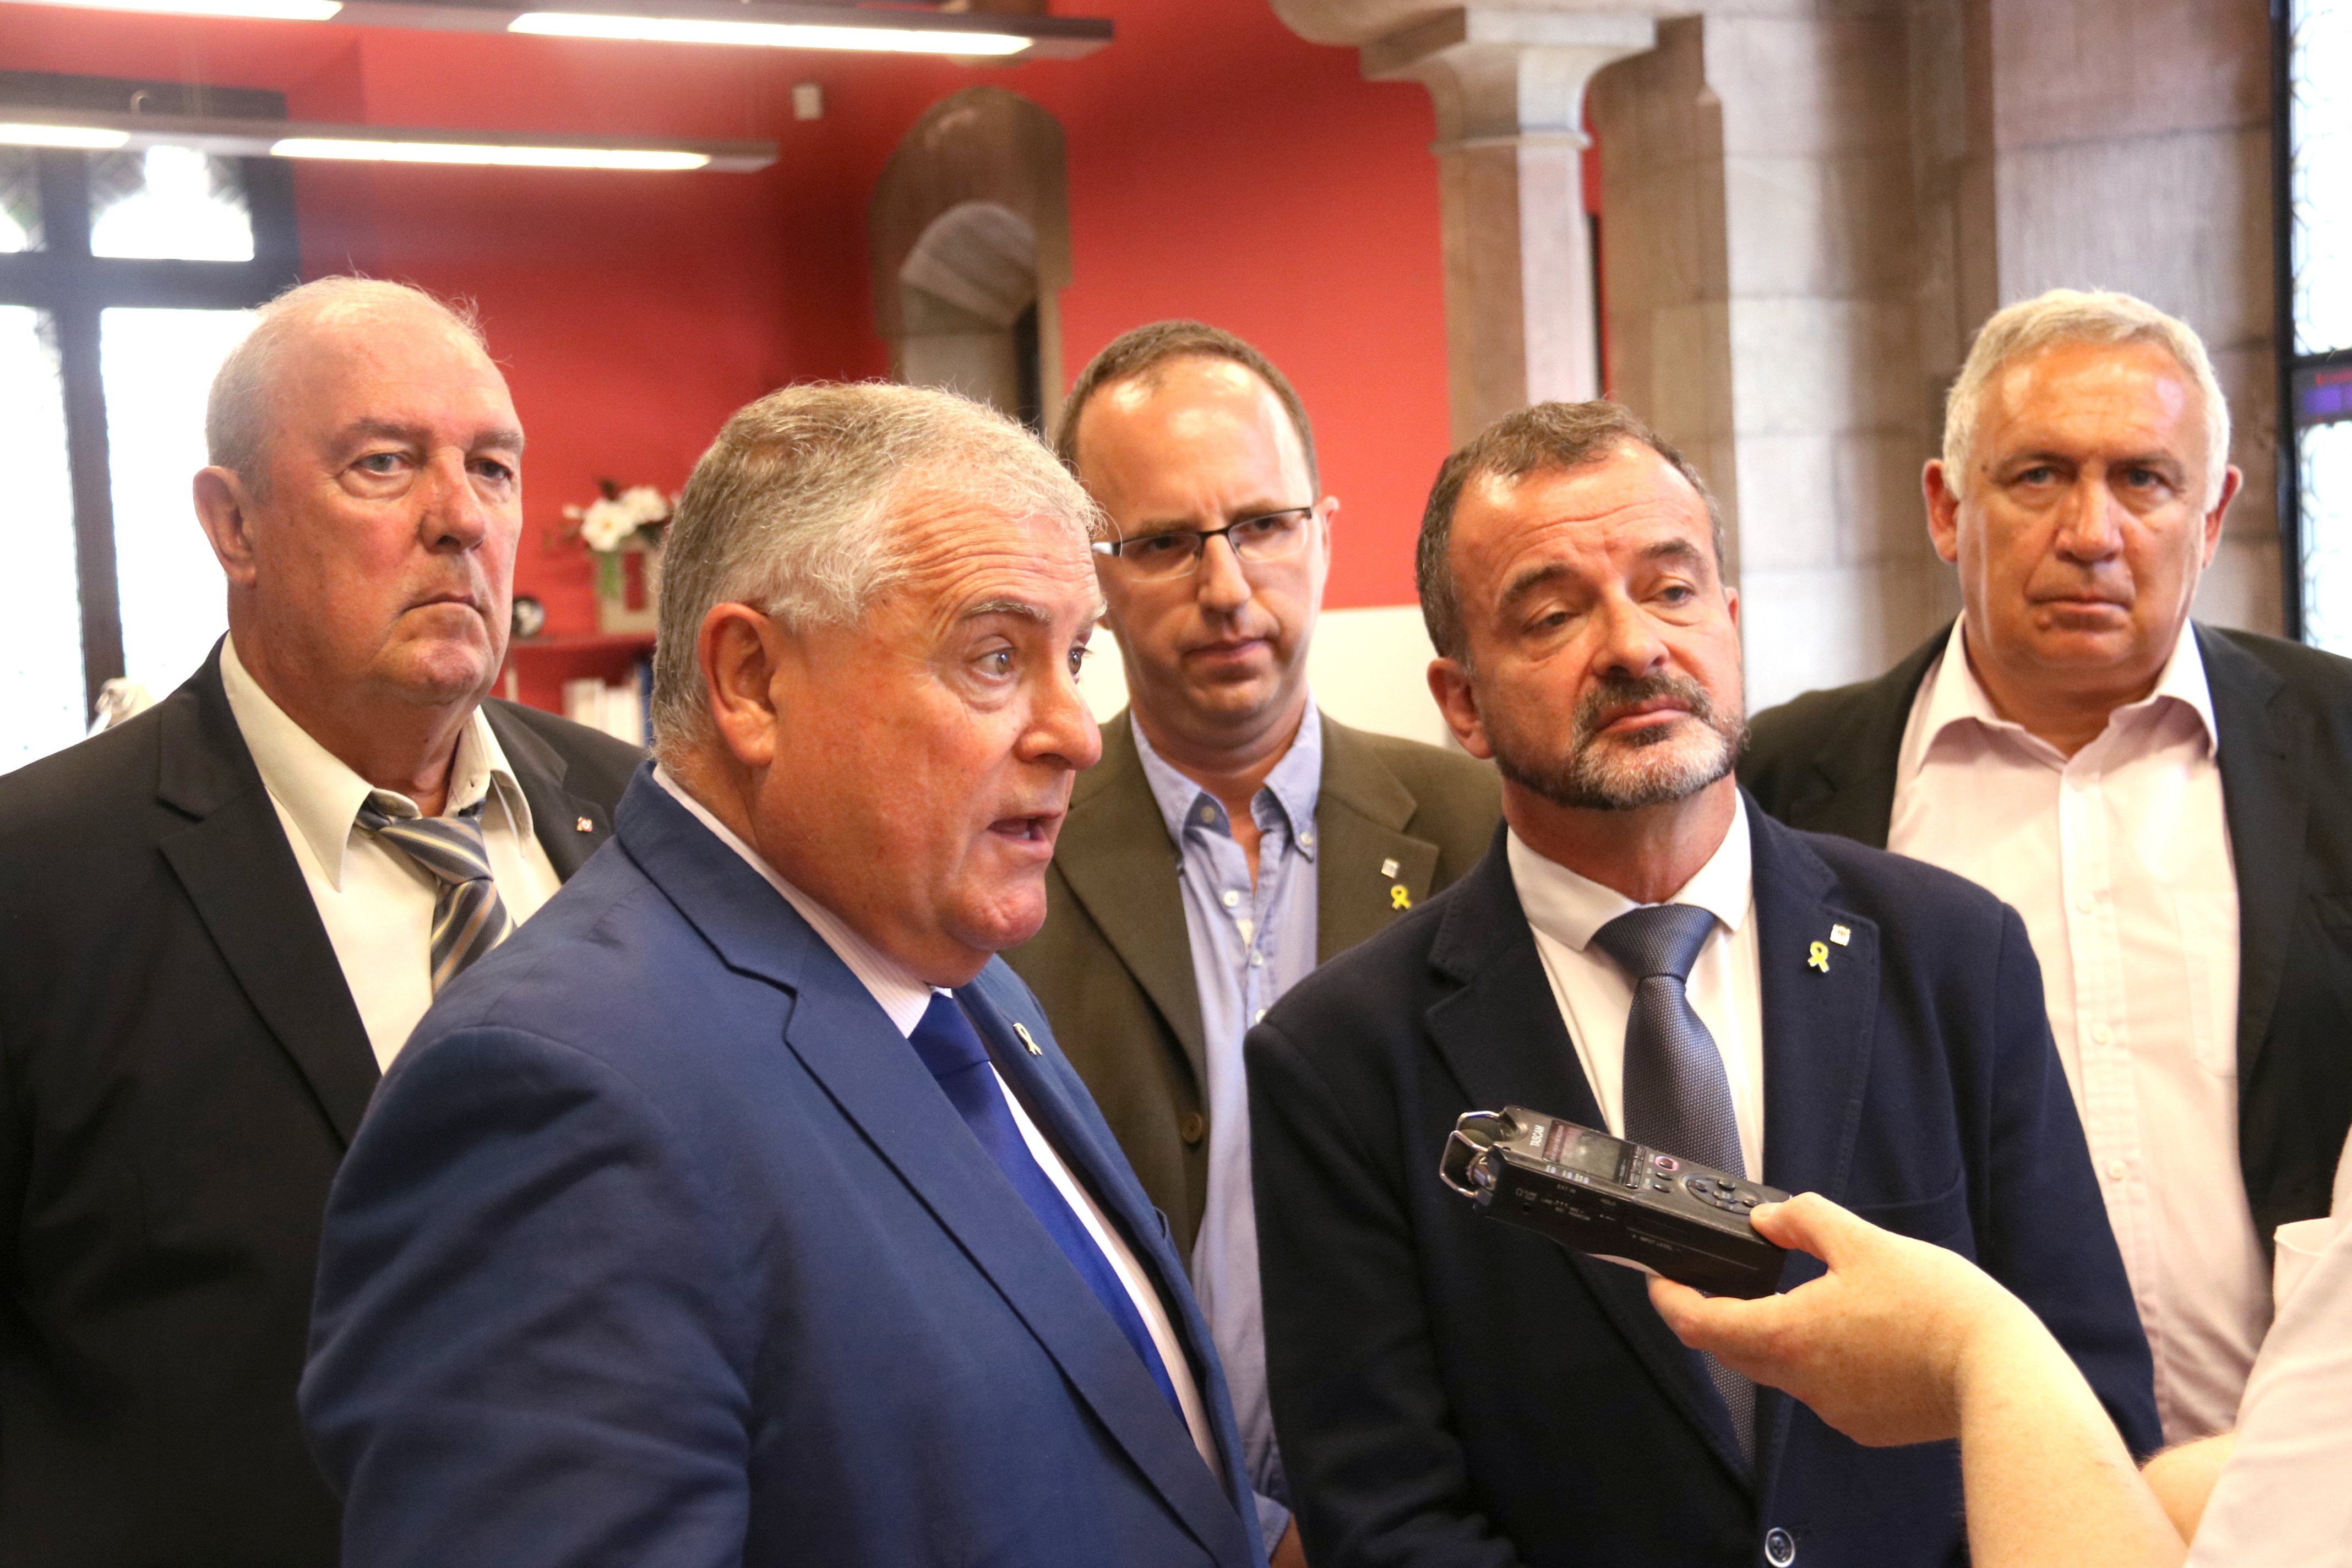 Polítics de la Catalunya Nord defensen que Puigdemont, Junqueras i Comín siguin eurodiputats